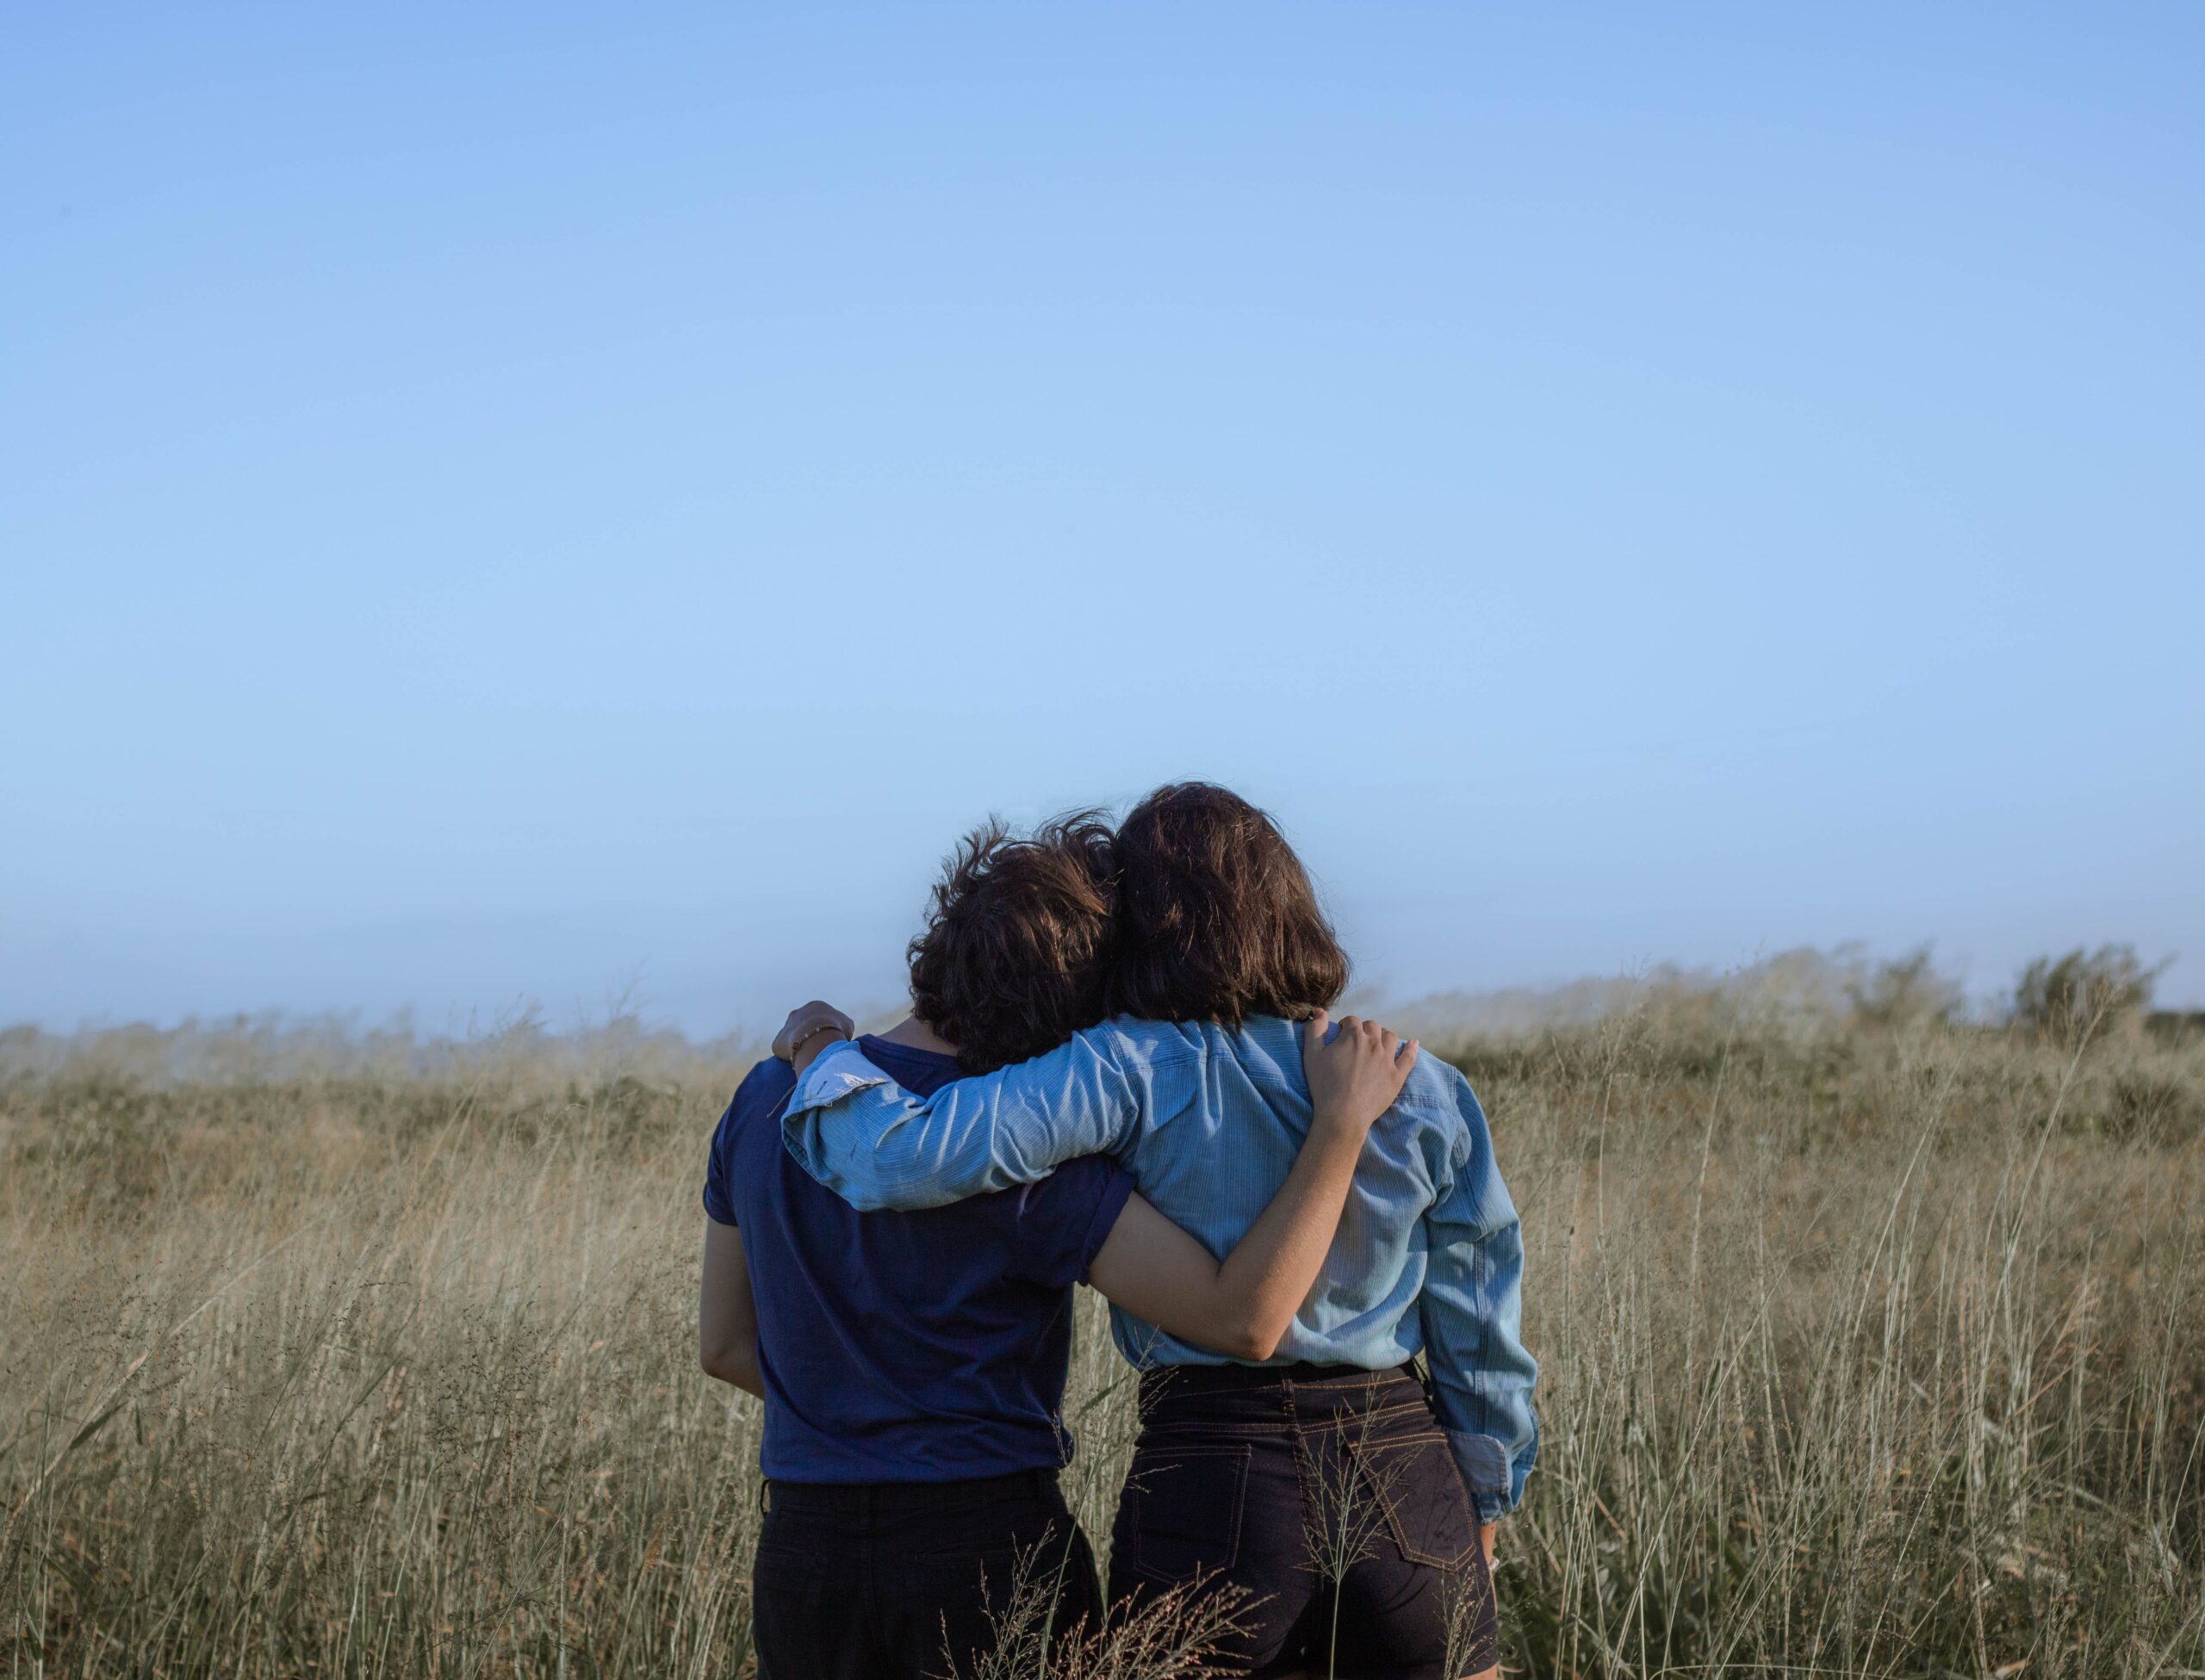 Two friends hugging in a field.